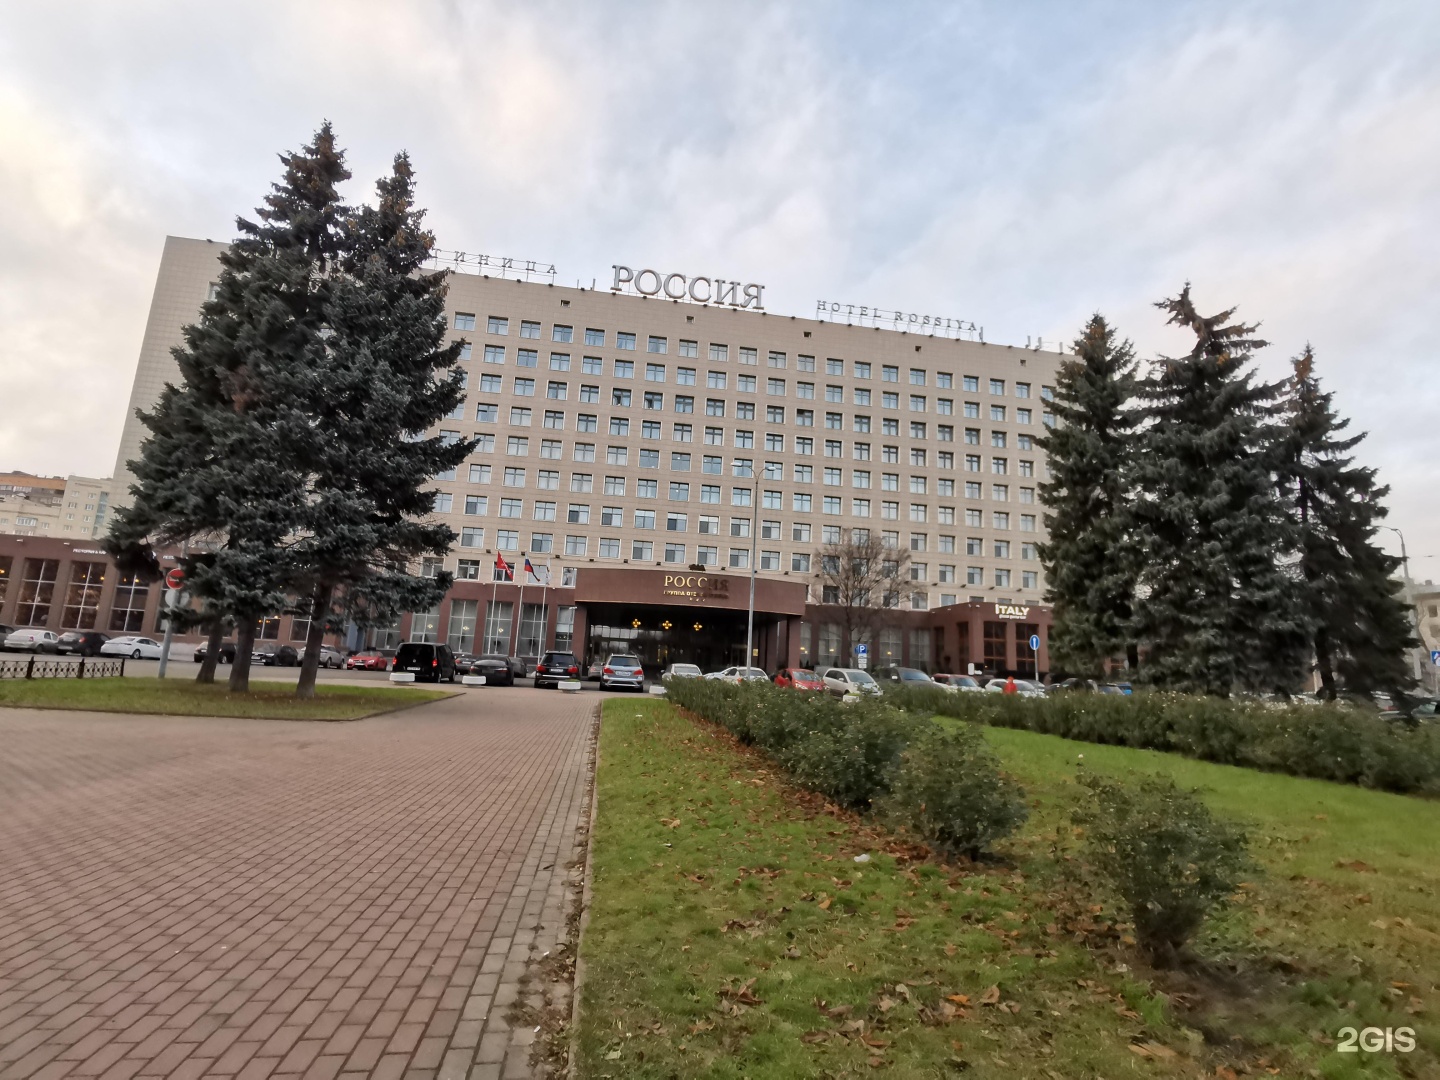 гостиница россия санкт петербург адрес